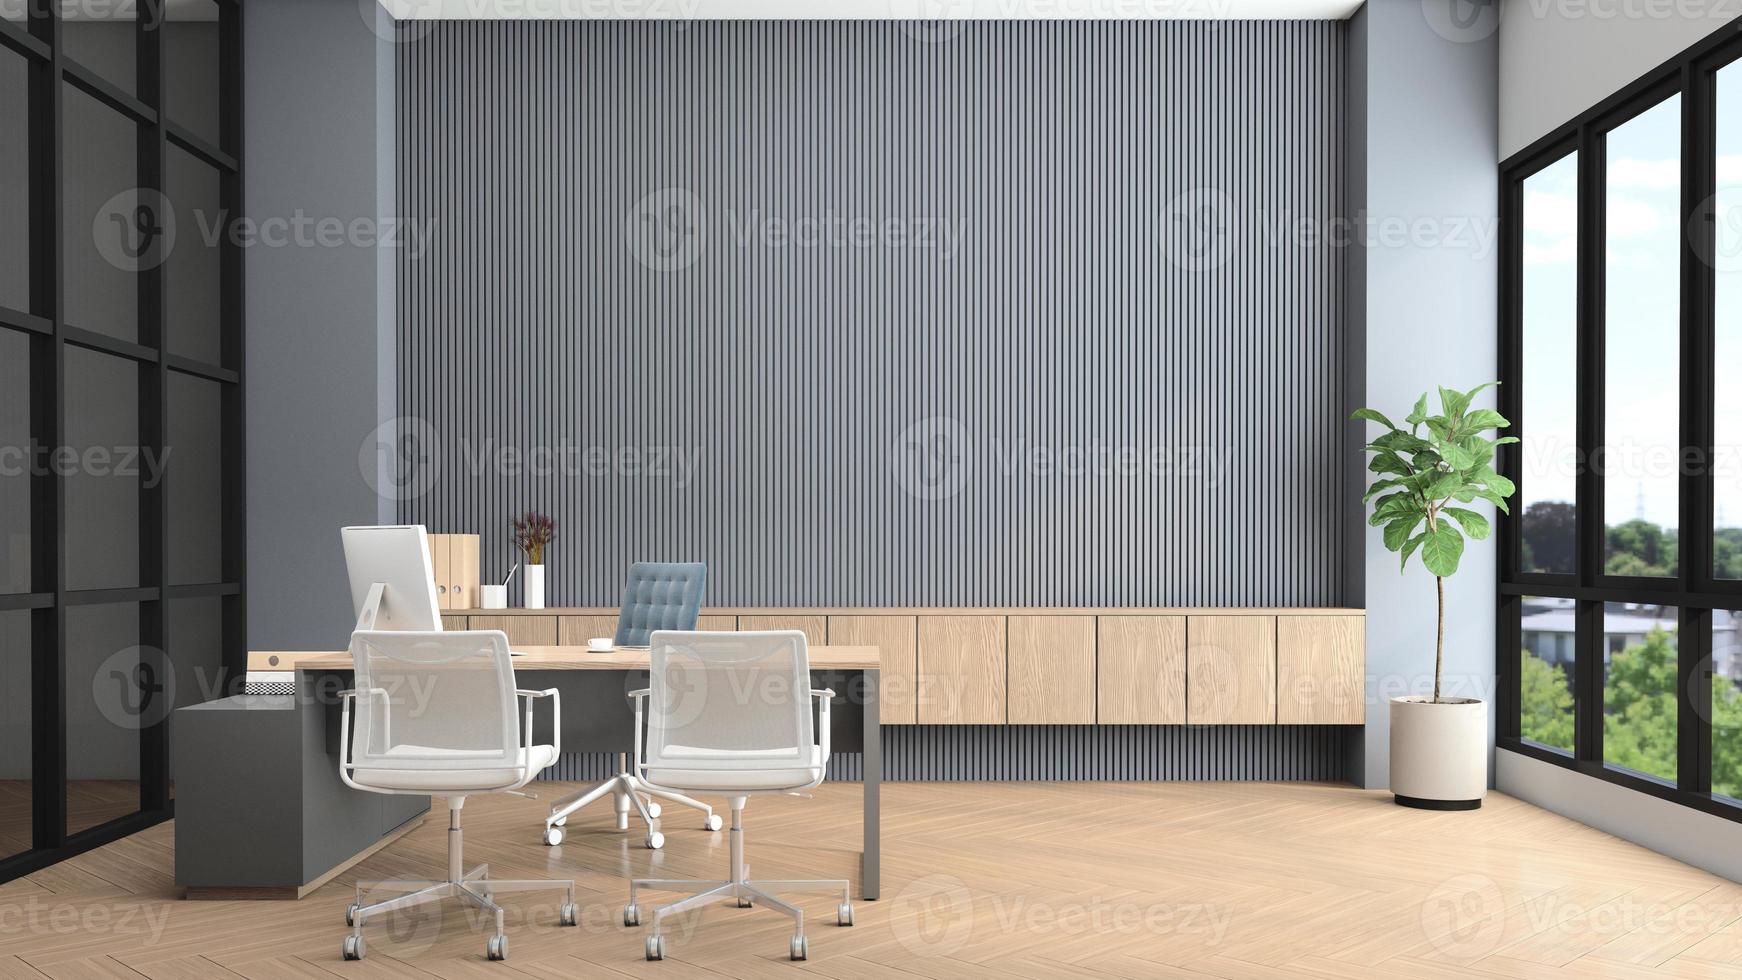 sala do gerente moderno com mesa e computador, parede de ripas cinza e armário de madeira embutido. renderização em 3D foto